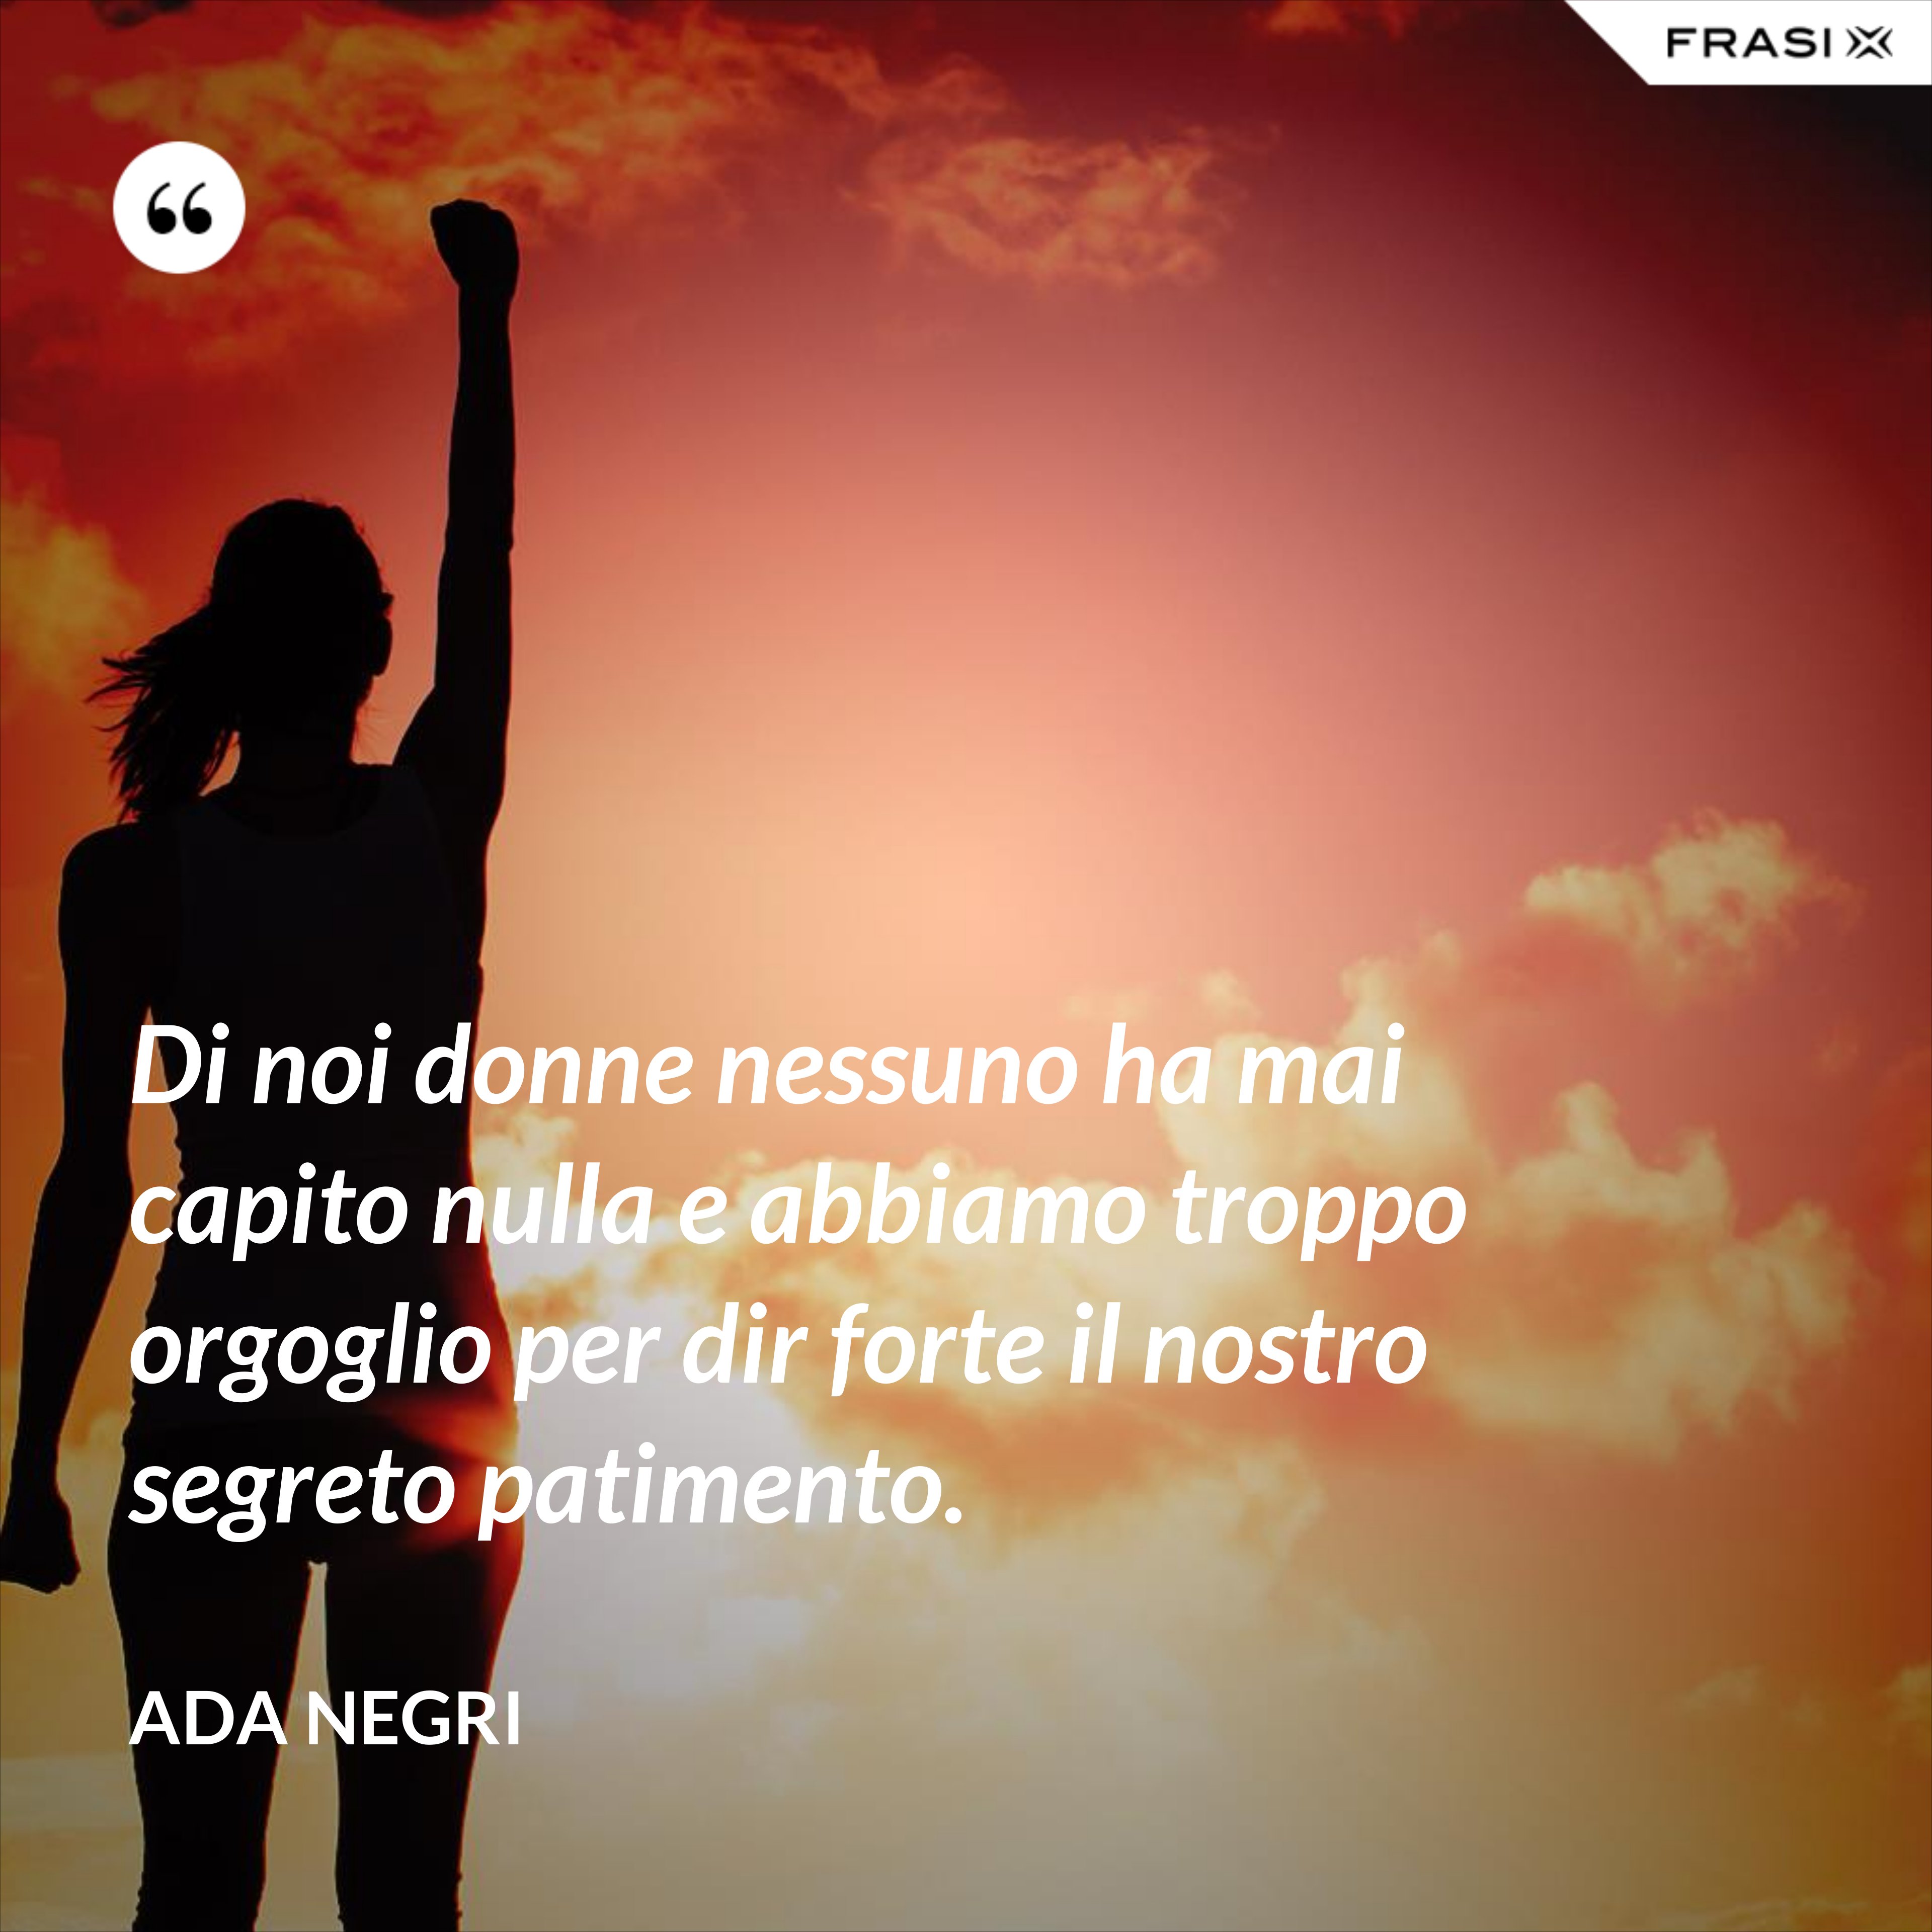 Di noi donne nessuno ha mai capito nulla e abbiamo troppo orgoglio per dir forte il nostro segreto patimento. - Ada Negri